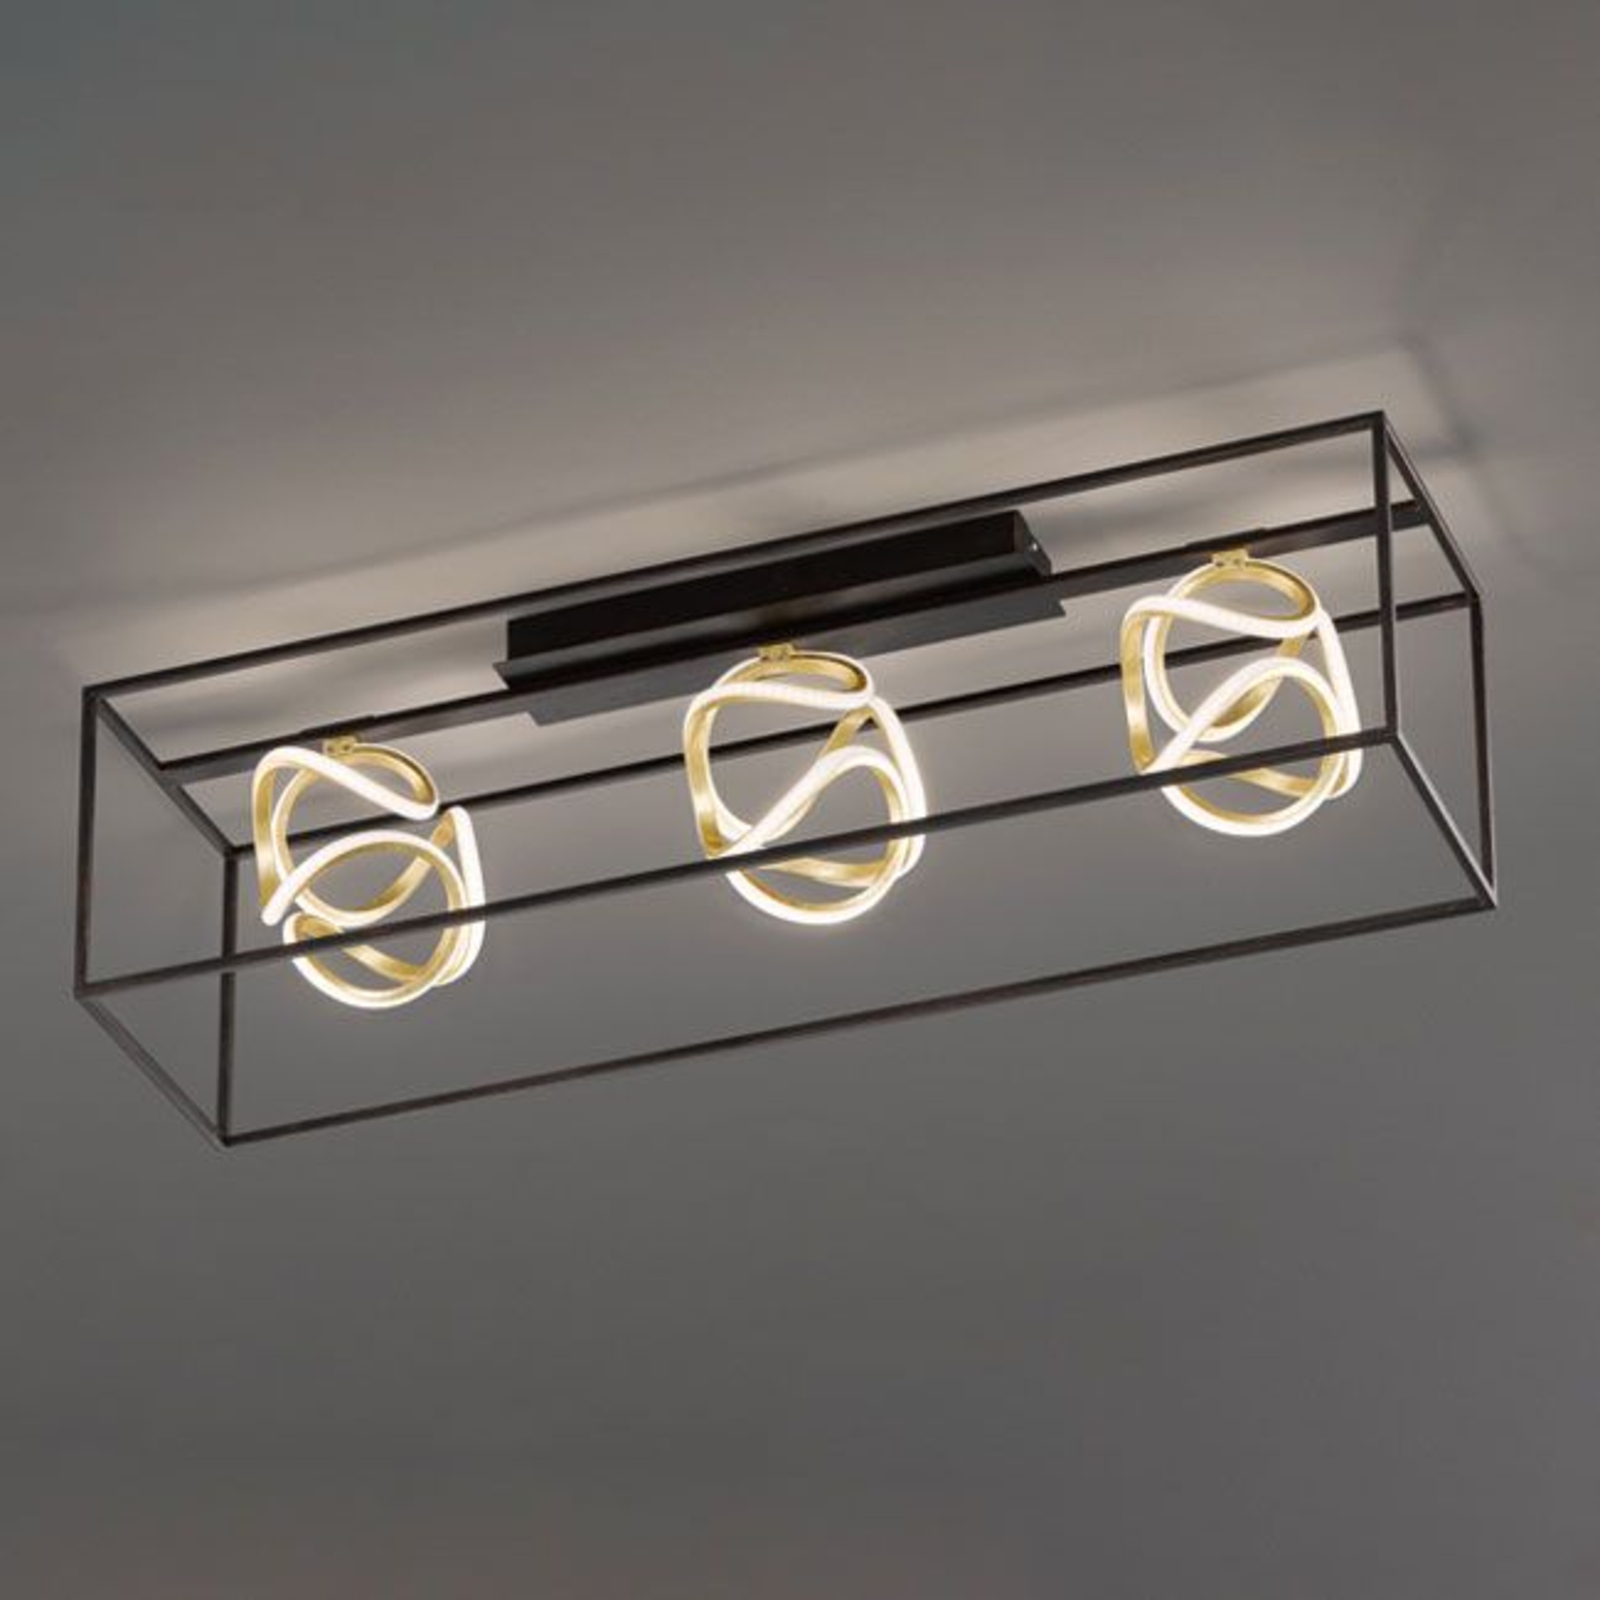 Φωτιστικό οροφής Gesa LED με μεταλλικό κλωβό